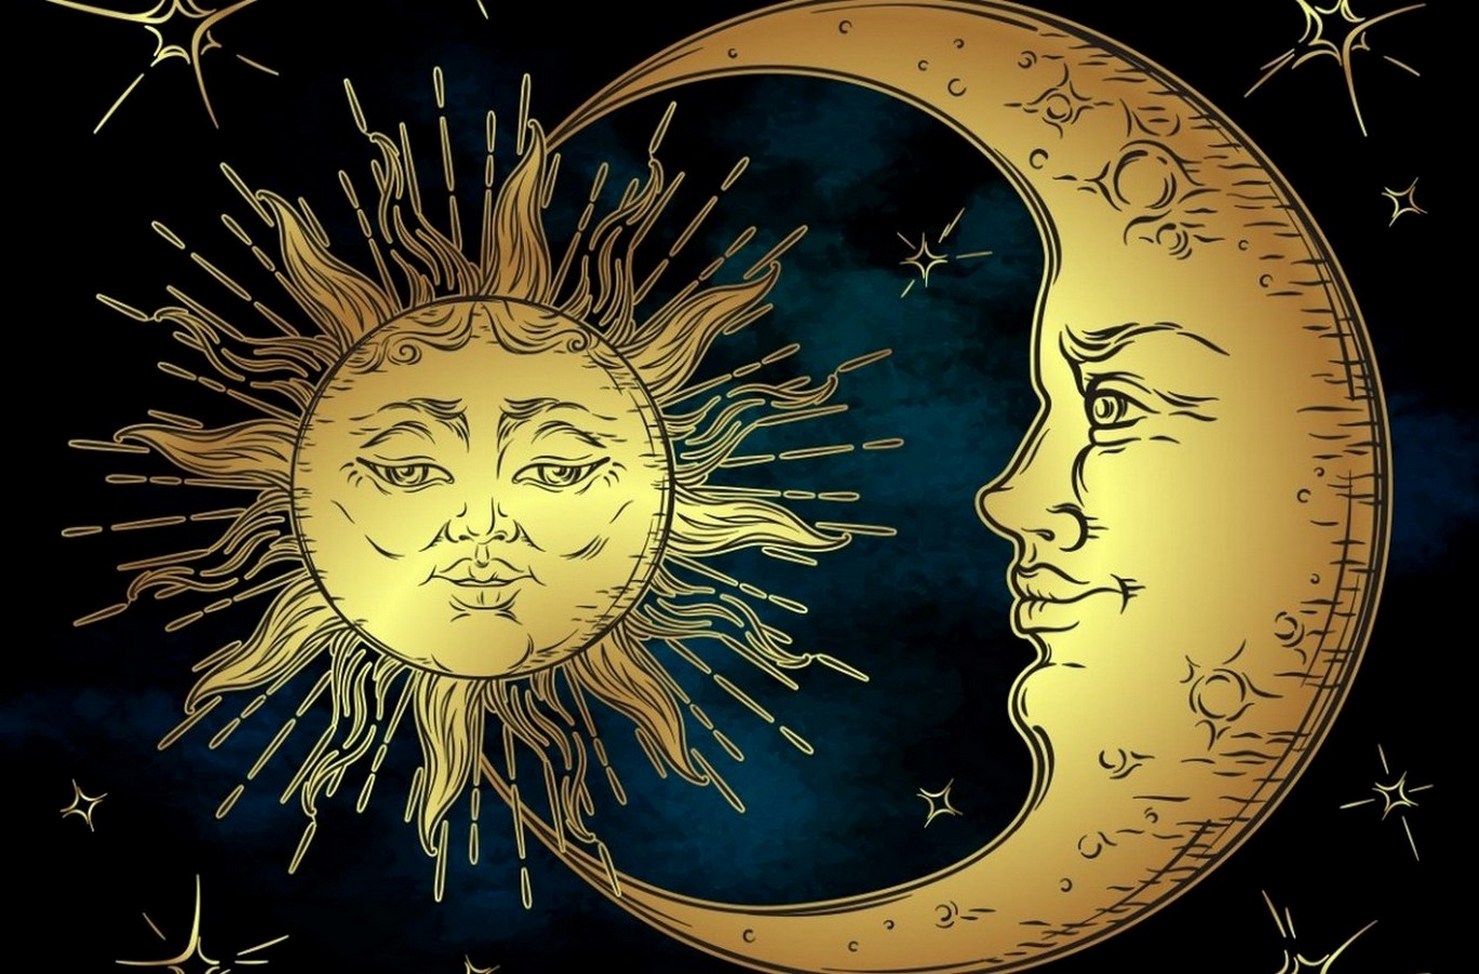 Про день равноденствия. Солнце и Луна. Kjcywt b Keyf. Изображение солнца и Луны. Чолйе и Луна.